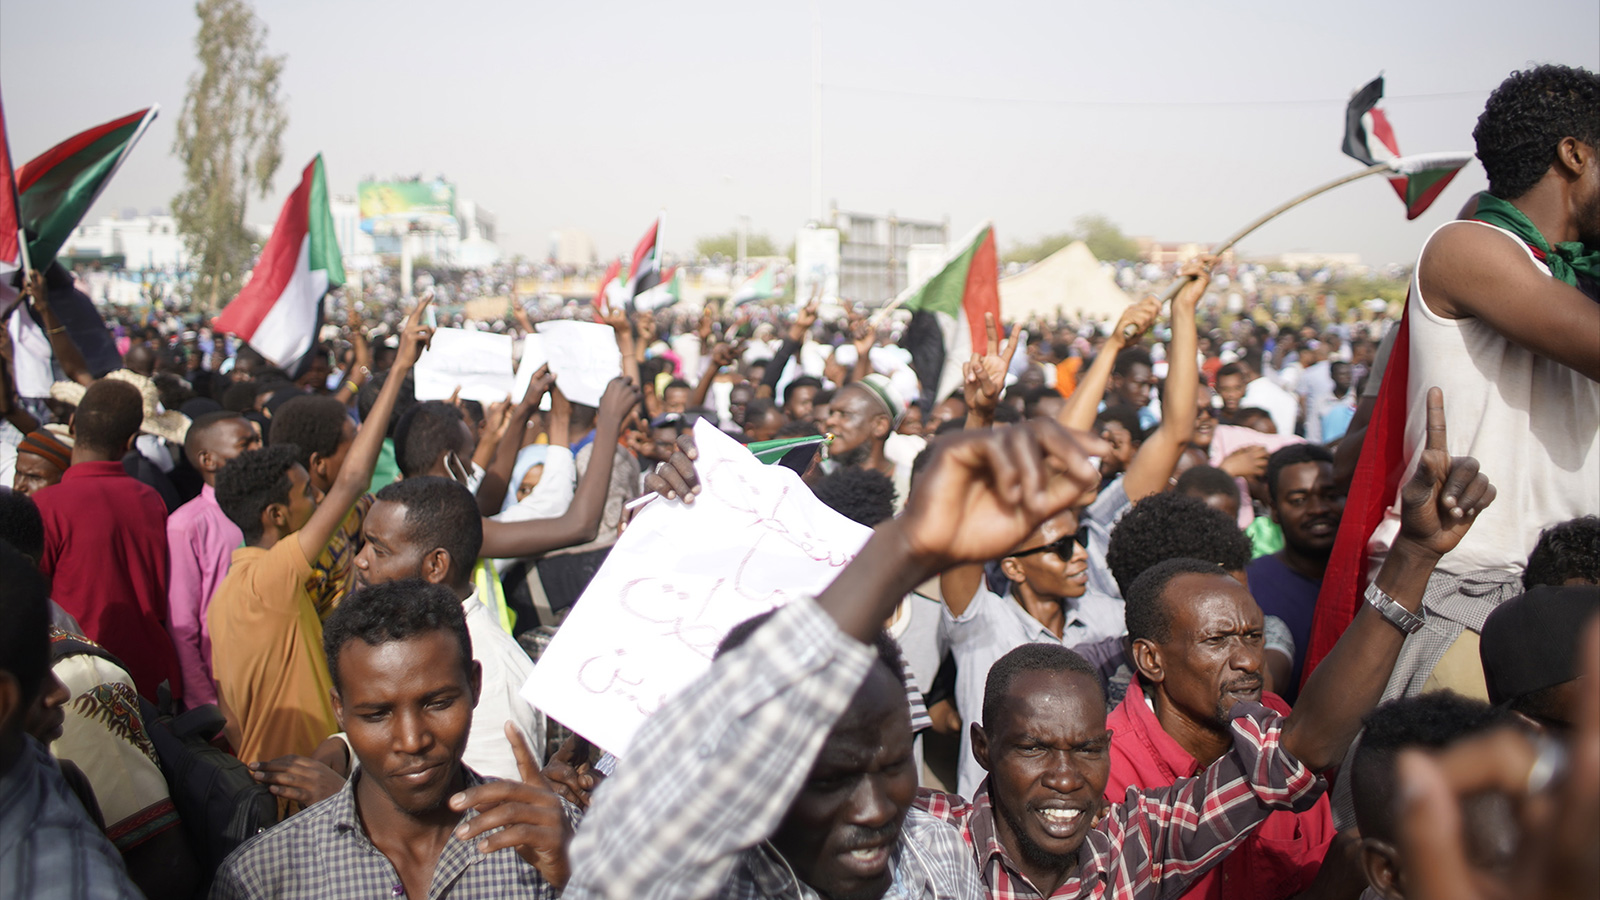 ‪متظاهرون سودانيون يطالبون بسقوط كامل للنظام‬ (الأوروبية)